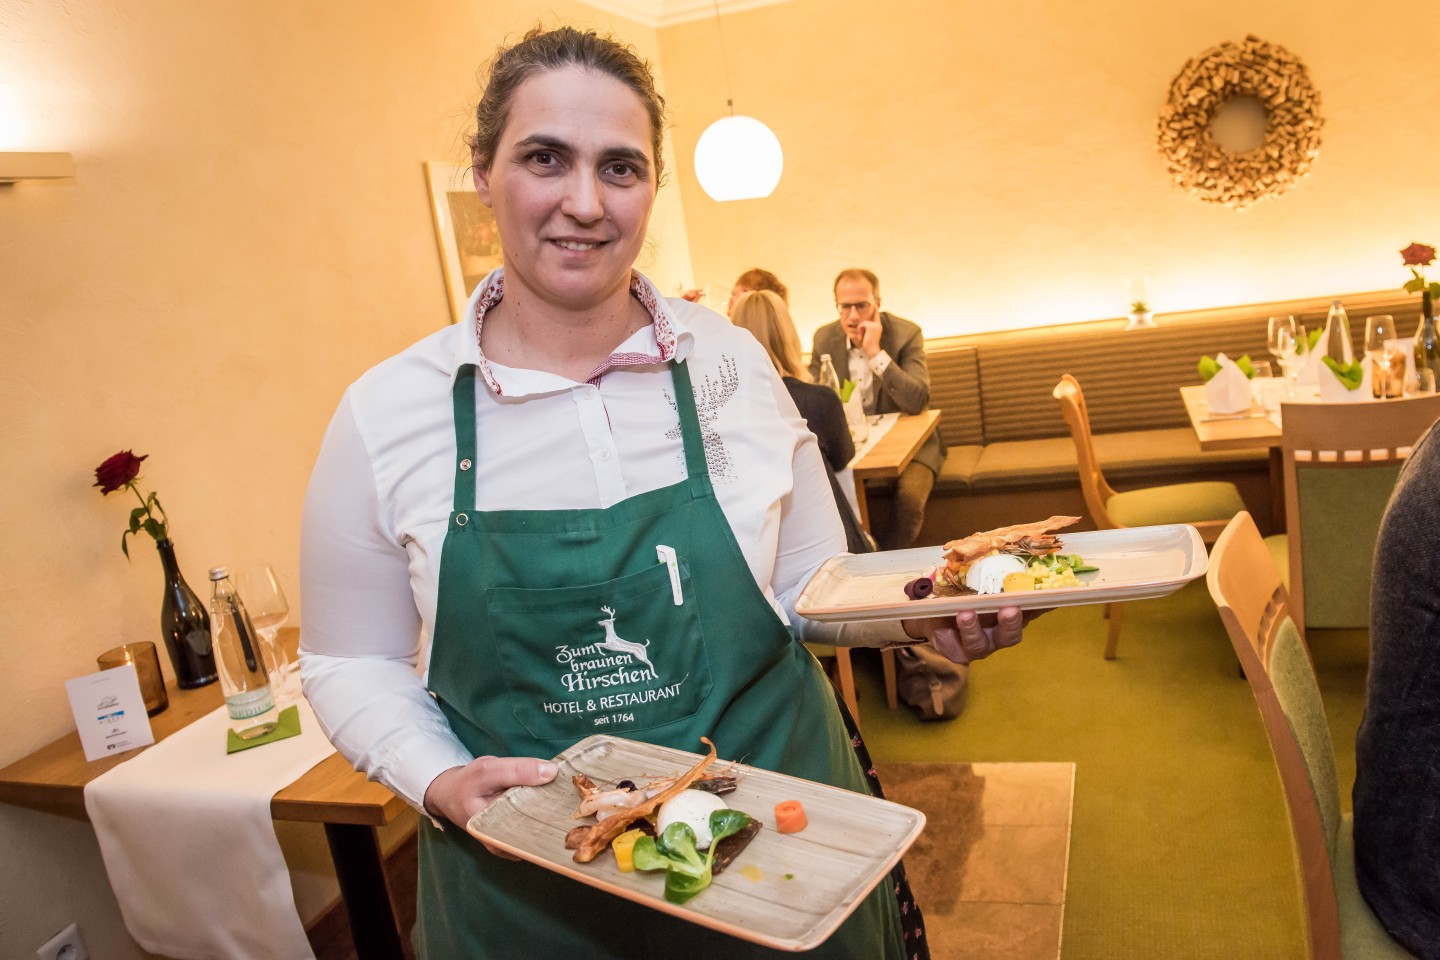 Foto: Ejvis Tominaj vom Restaurant “Zum braunen Hirschen“ lädt bei der Gourmet-Tour 2022 zum Dessert ein.